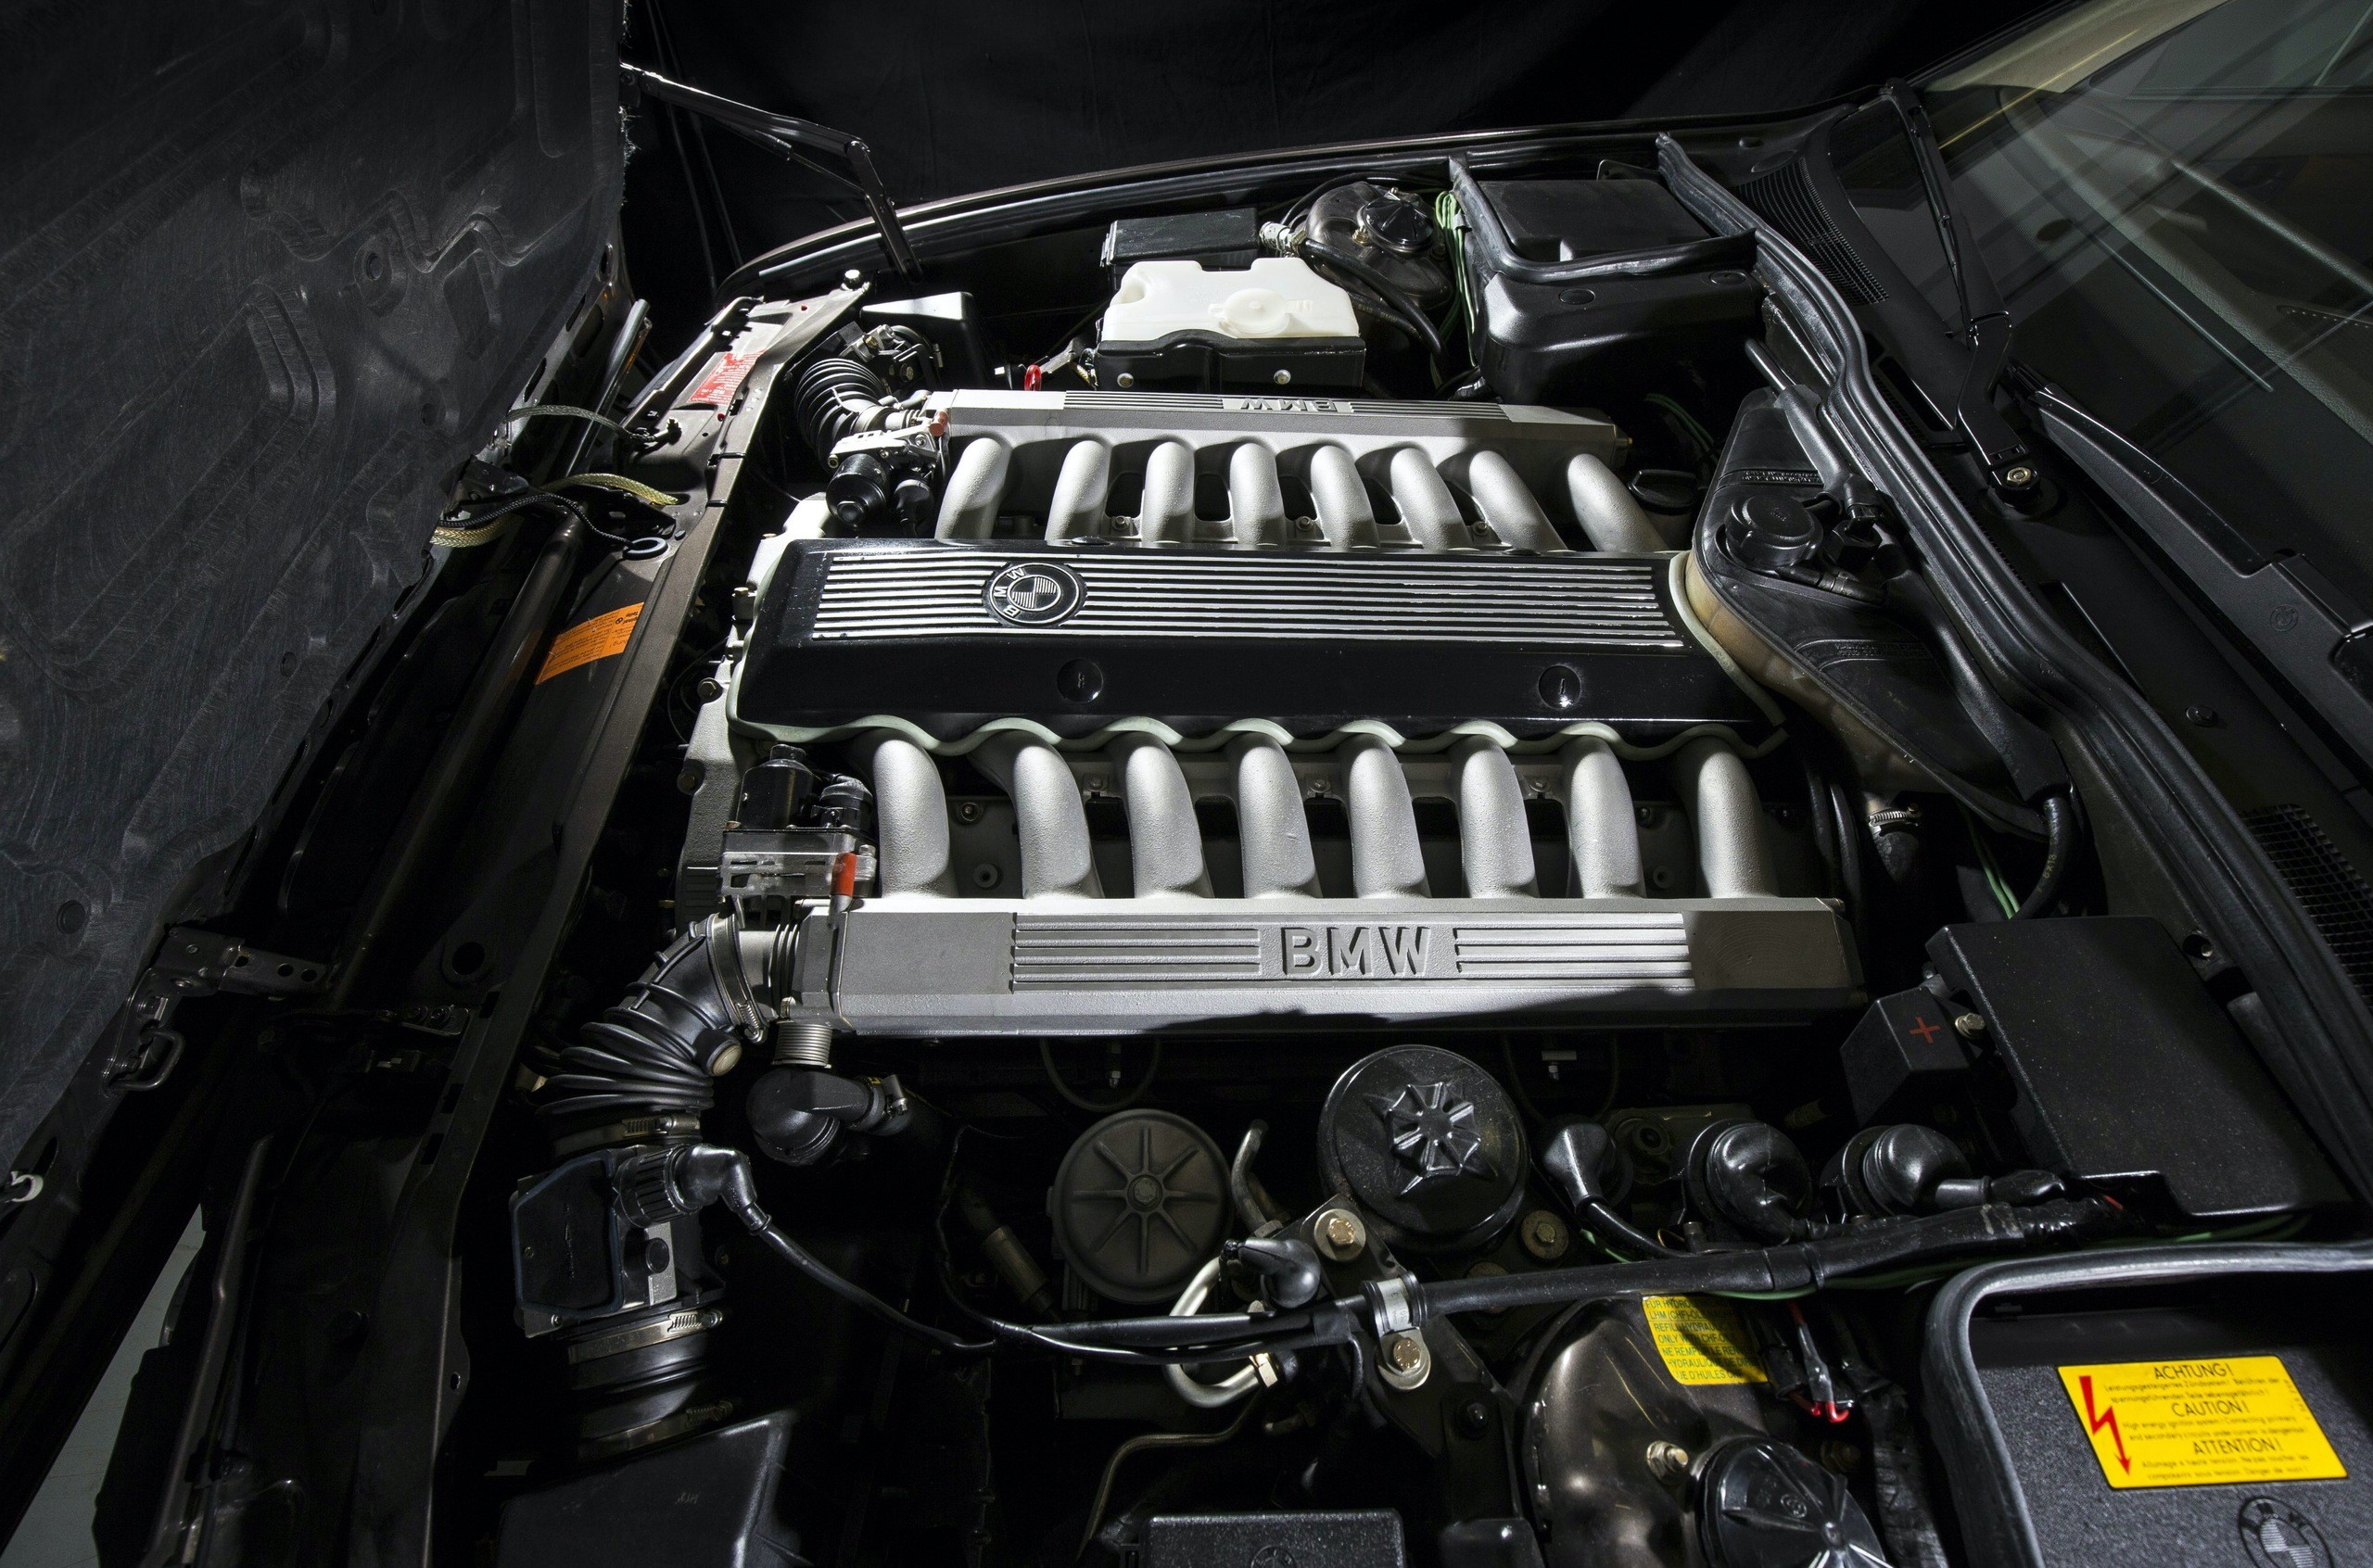 V16 इंजन - प्रतिष्ठित इकाई के बारे में वह सब कुछ जो आप जानना चाहते हैं